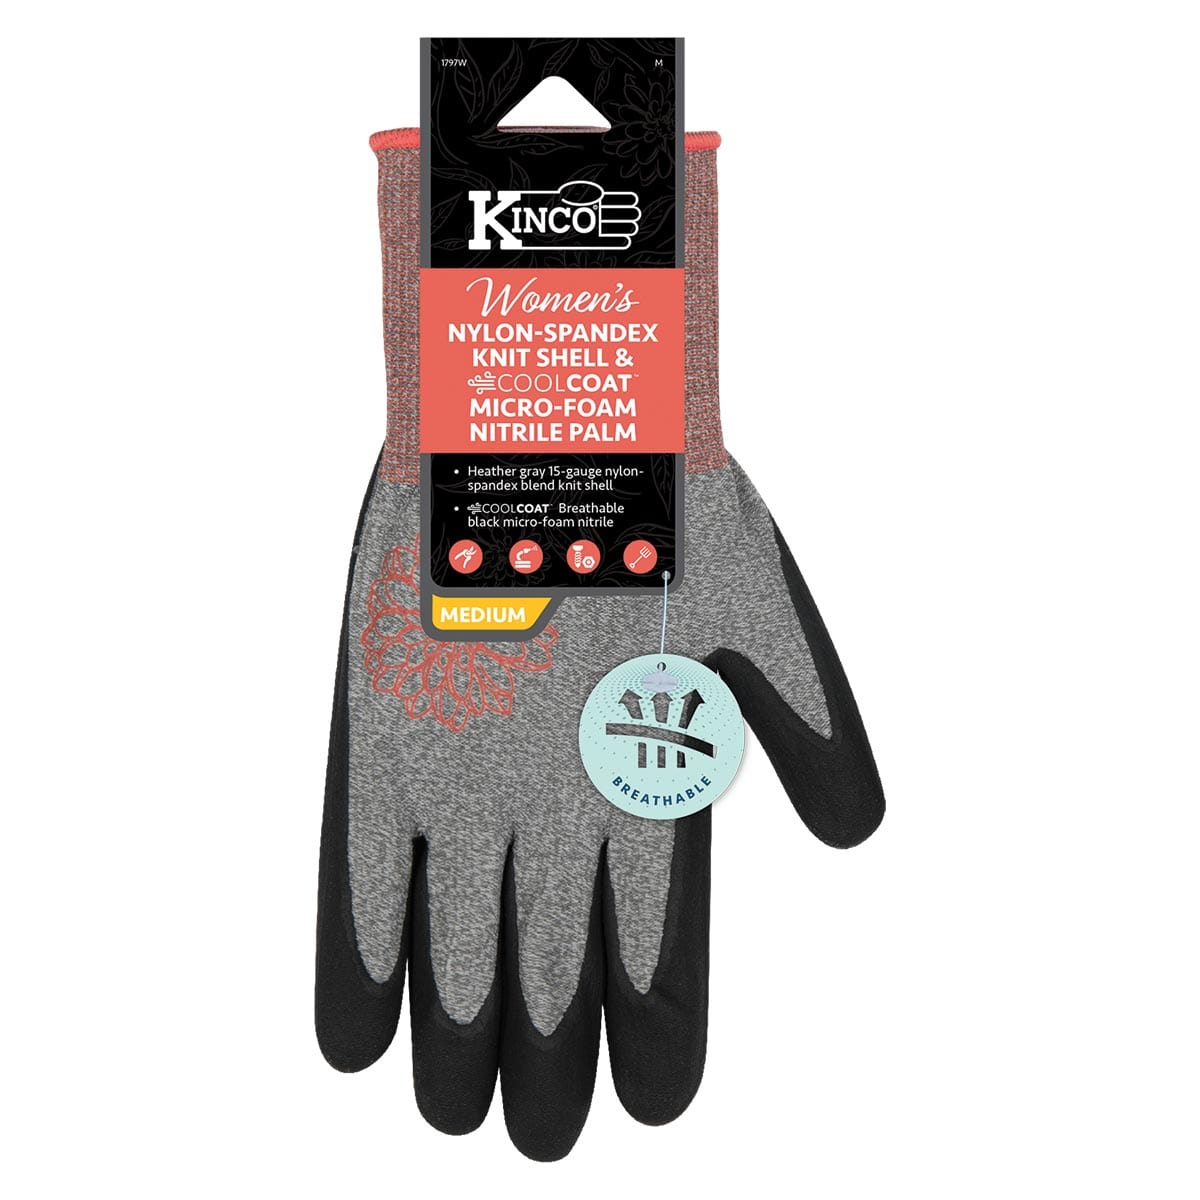 Kinco Women’s Nylon-Spandex Knit Shell & Micro-Foam Nitrile Palm